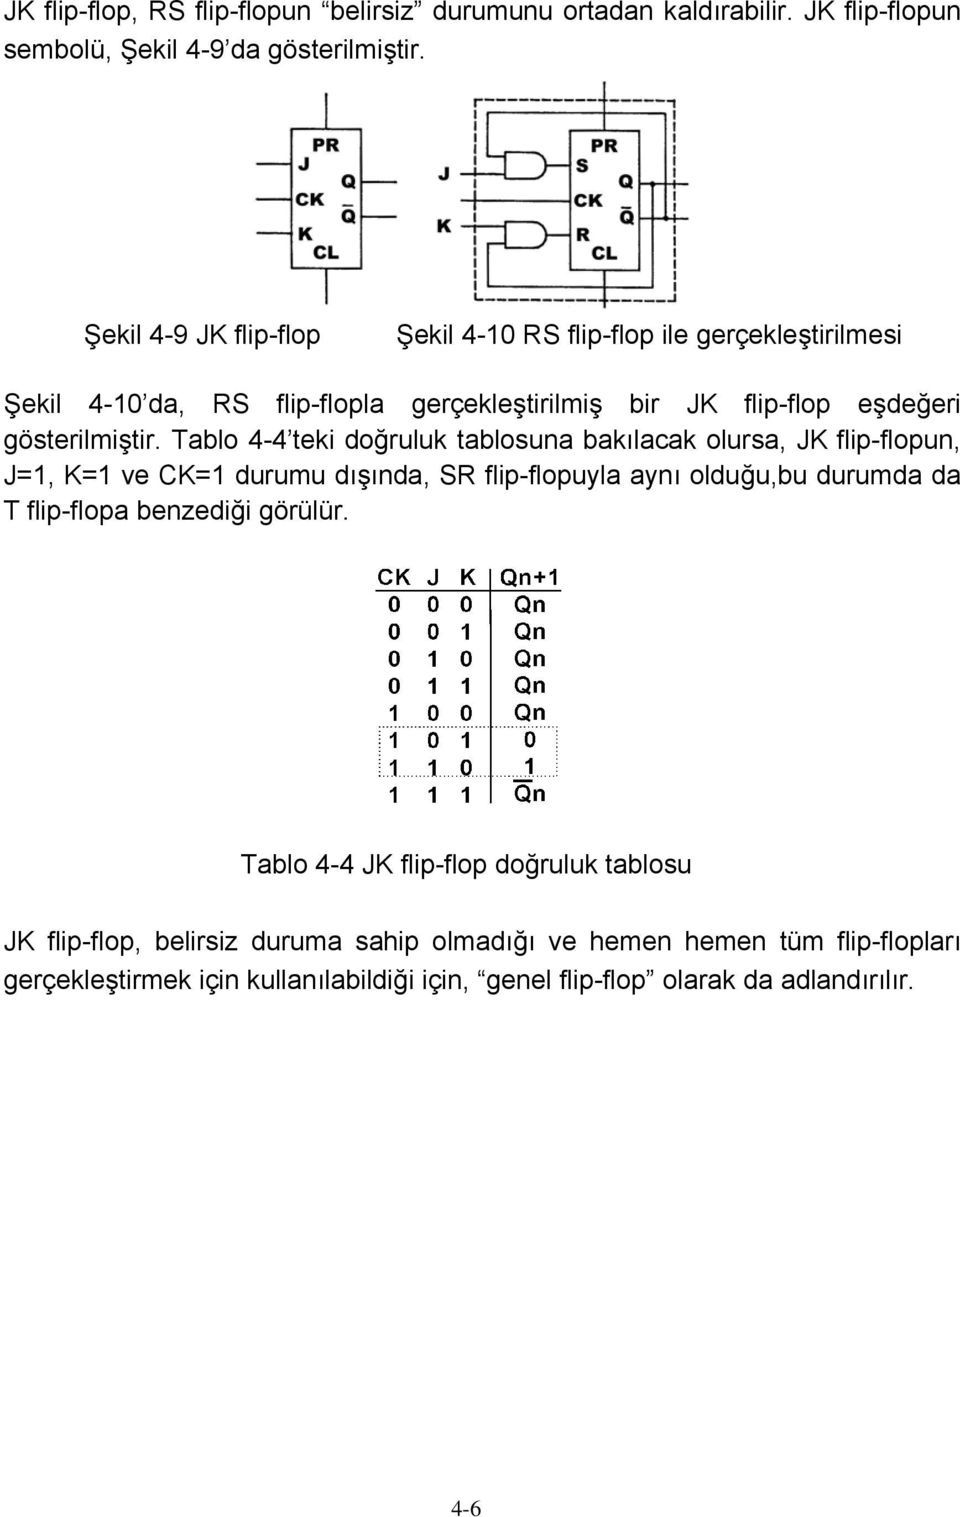 Tablo 4-4 teki doğruluk tablosuna bakılacak olursa, JK flip-flopun, J=1, K=1 ve CK=1 durumu dışında, SR flip-flopuyla aynı olduğu,bu durumda da T flip-flopa